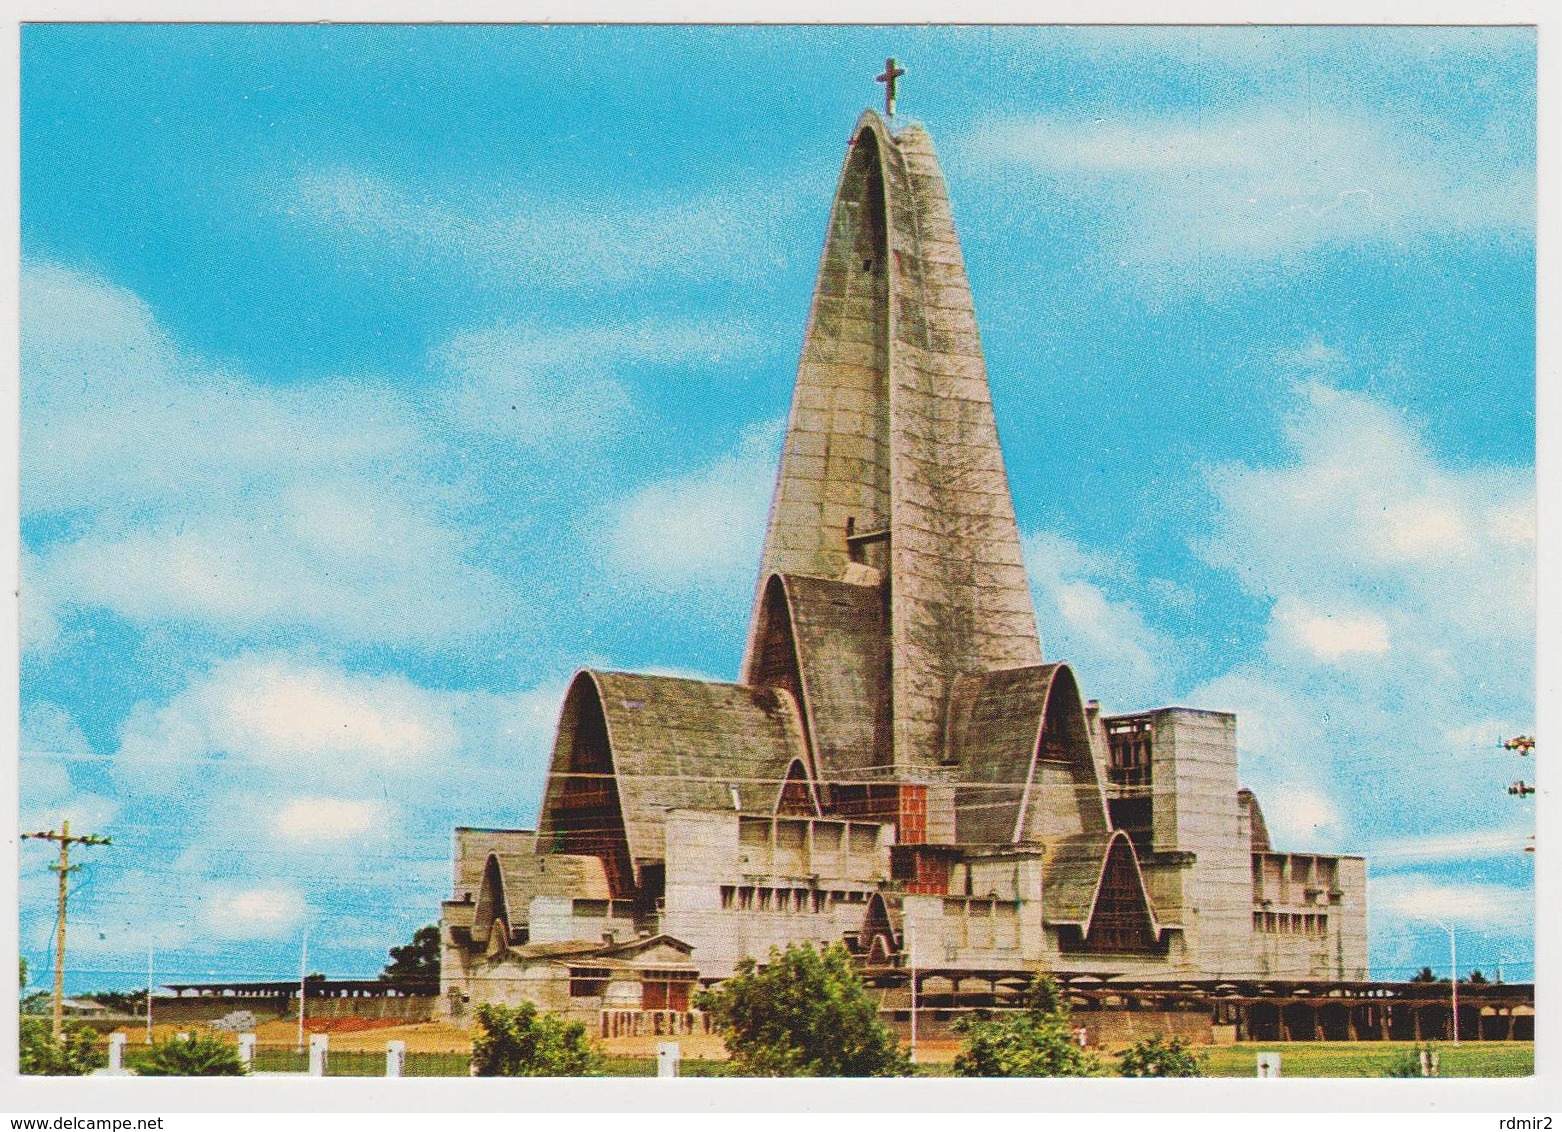 1483/ HIGUEY, Dominican Republic. Church Basilica Ntra. Señora (Our Lady) De La Altagracia (1974).- Non écrite. Unused. - República Dominicana